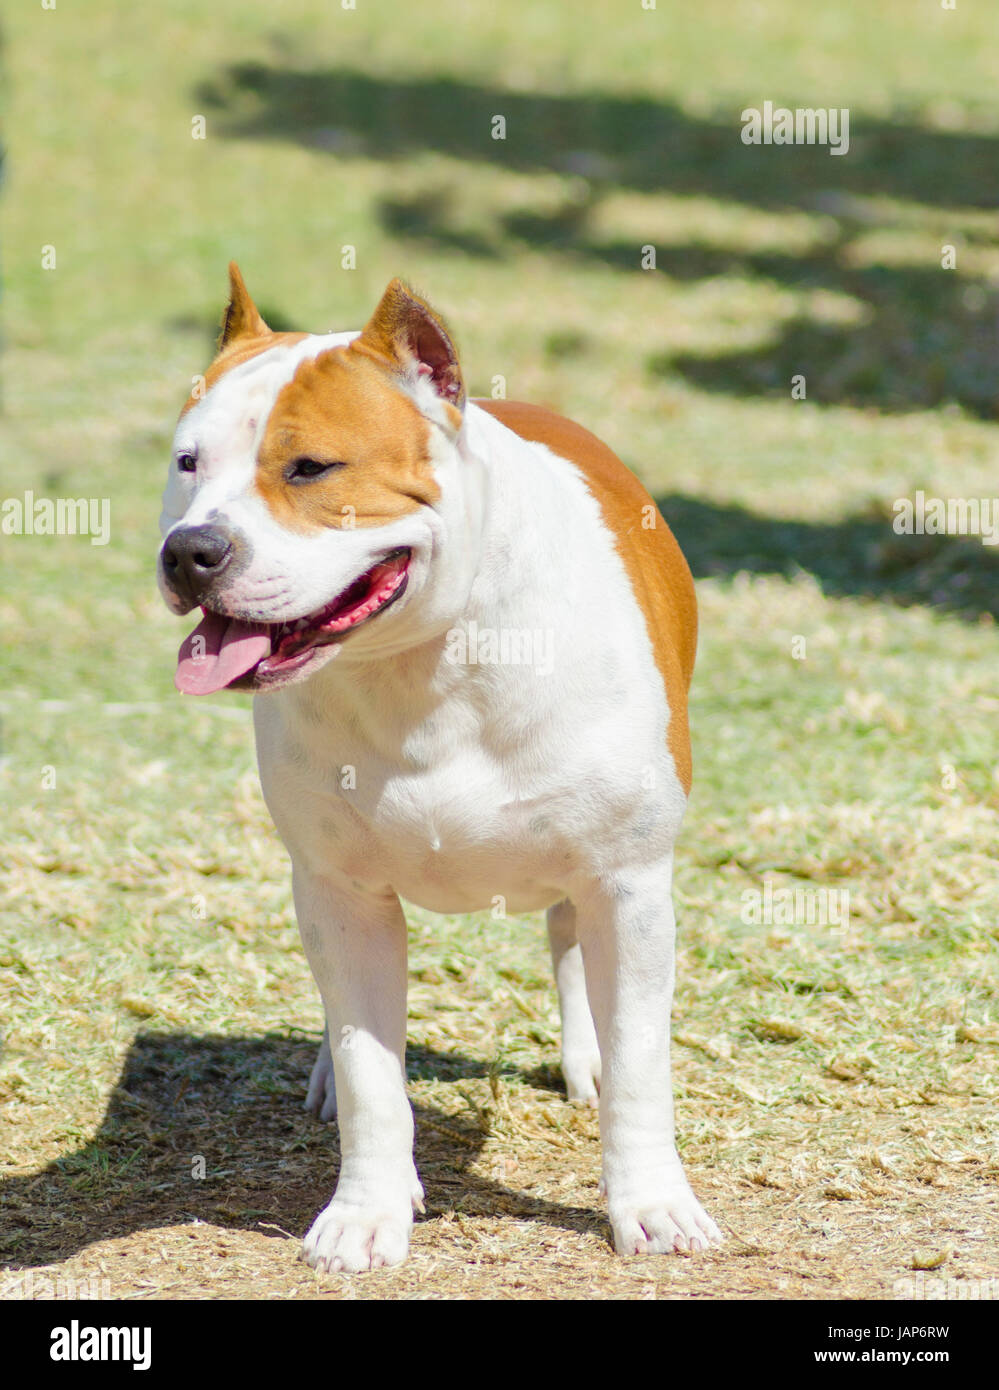 Un petit, jeune, beau, blanc et sable rouge American Staffordshire Terrier debout sur la pelouse tout en collant sa langue, et à la fois ludique et joyeux. Ses oreilles sont coupées. Banque D'Images